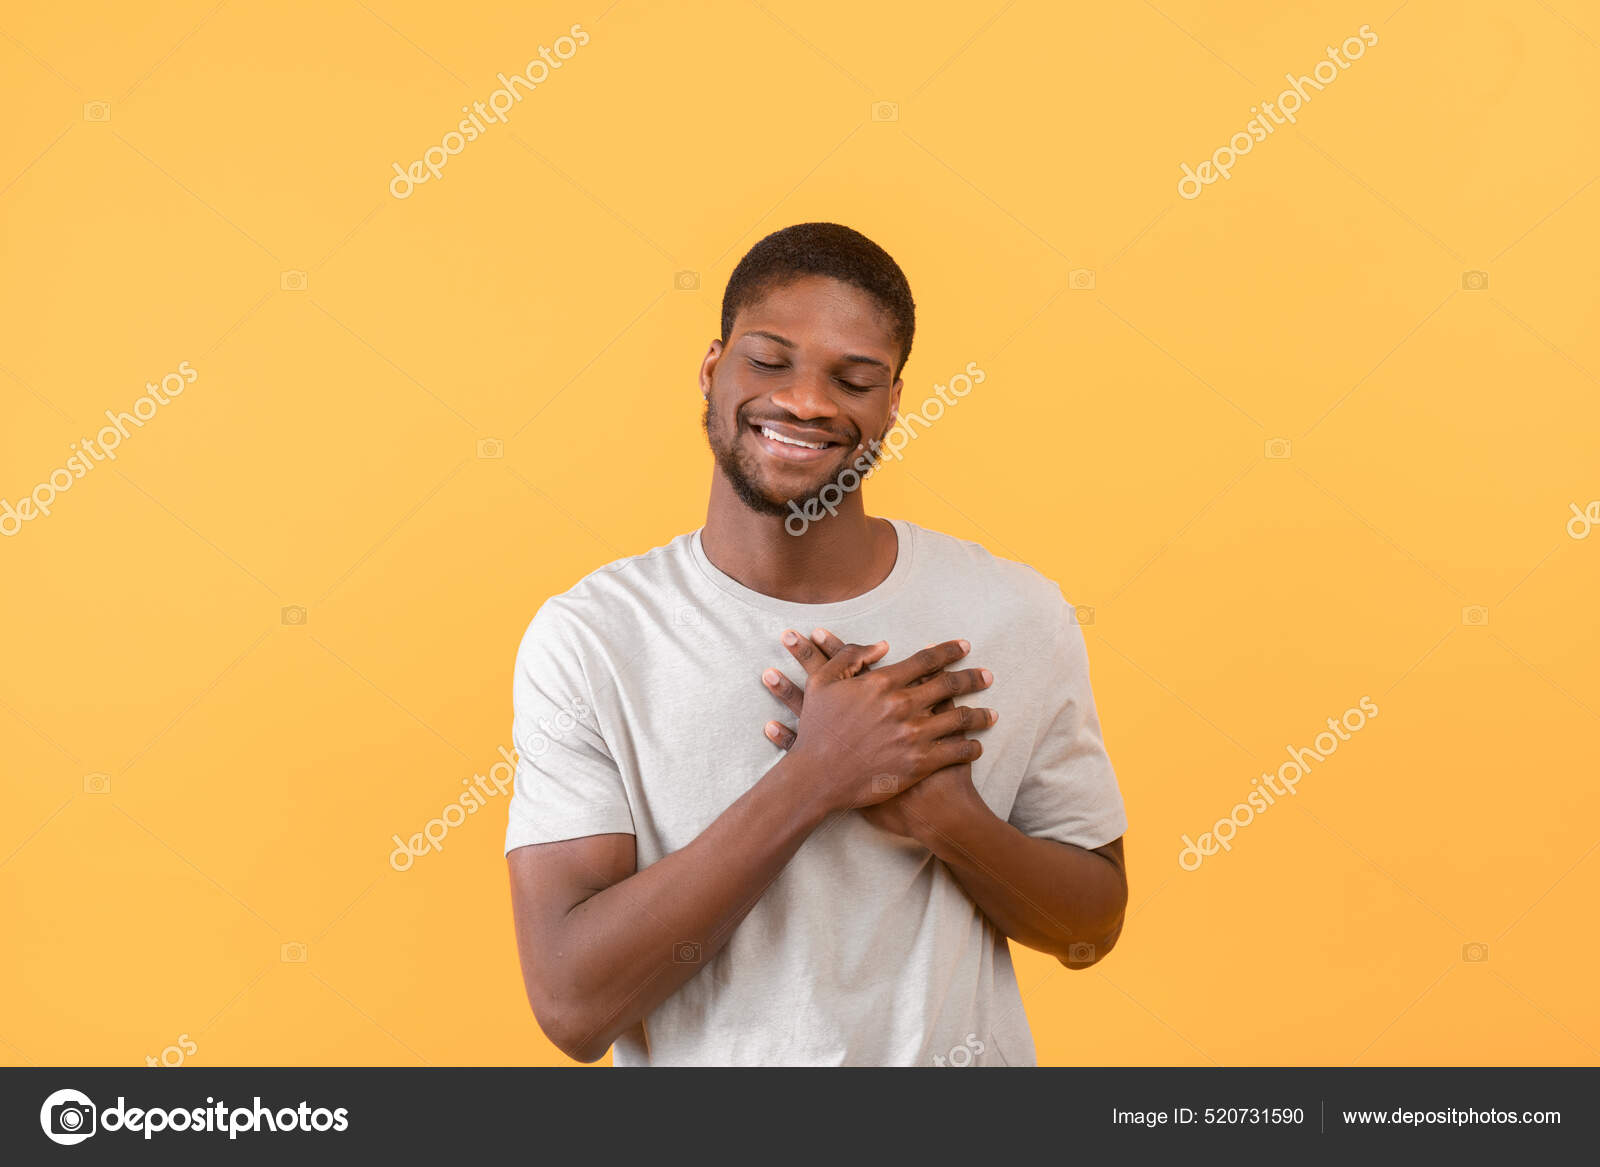 Сердечный черный парень держит руки на груди, выражая благодарность и  положительные эмоции, желтый фон стоковое фото ©Milkos 520731590